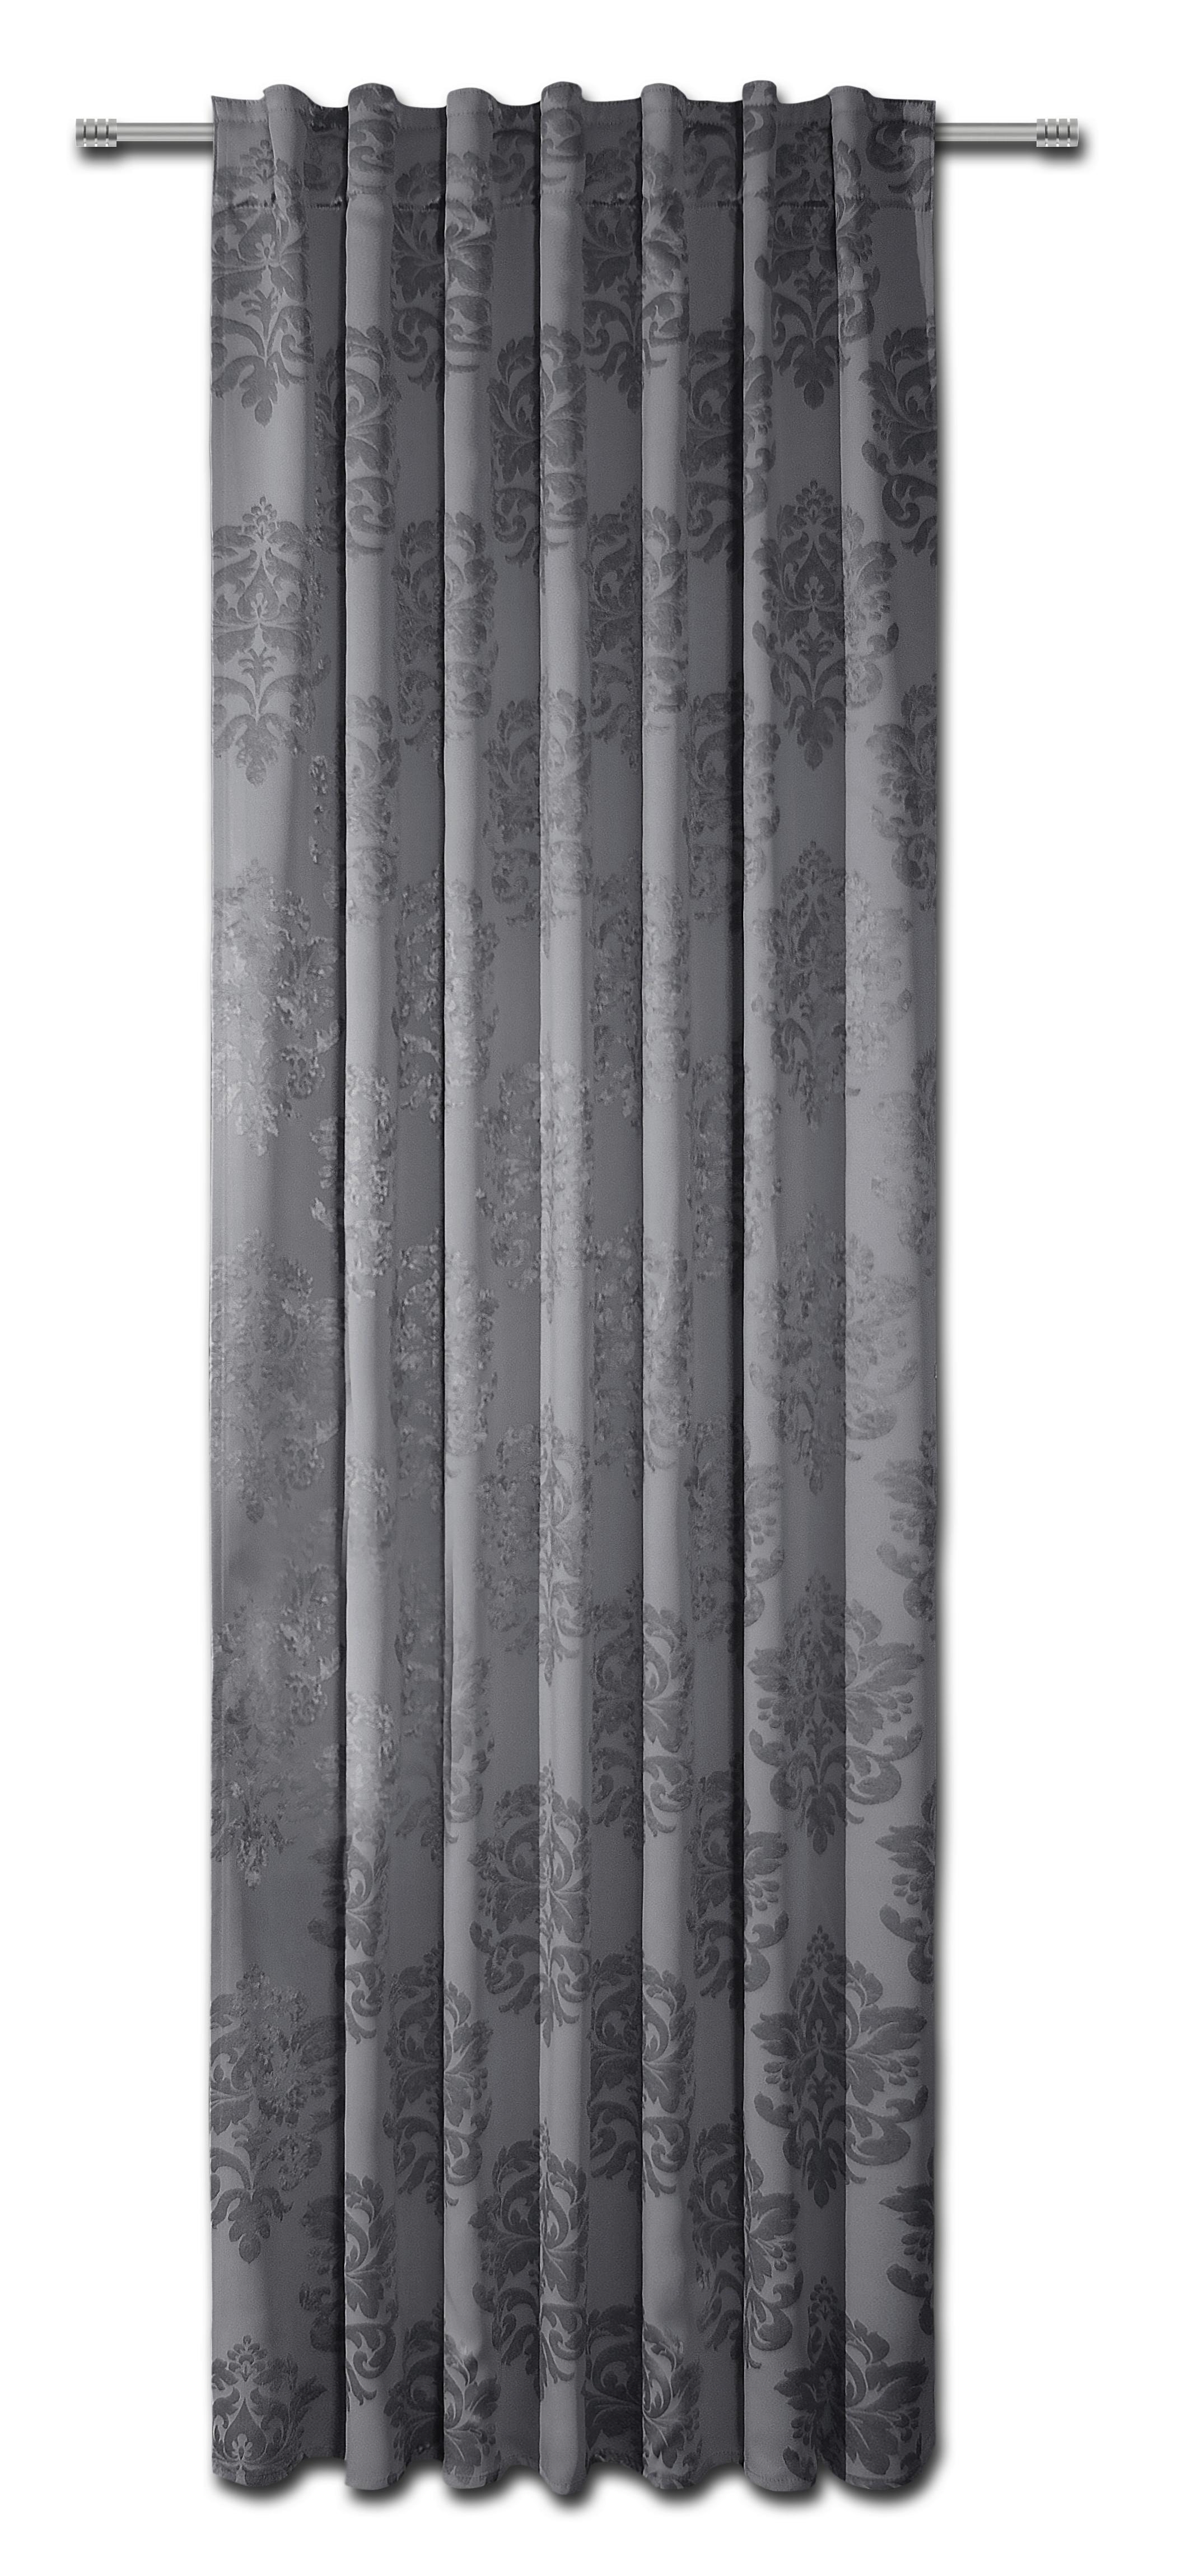 Vorhang Mit Schlaufen und Band Jena 135x245 cm Grau - Grau, ROMANTIK / LANDHAUS, Textil (135/245cm) - James Wood